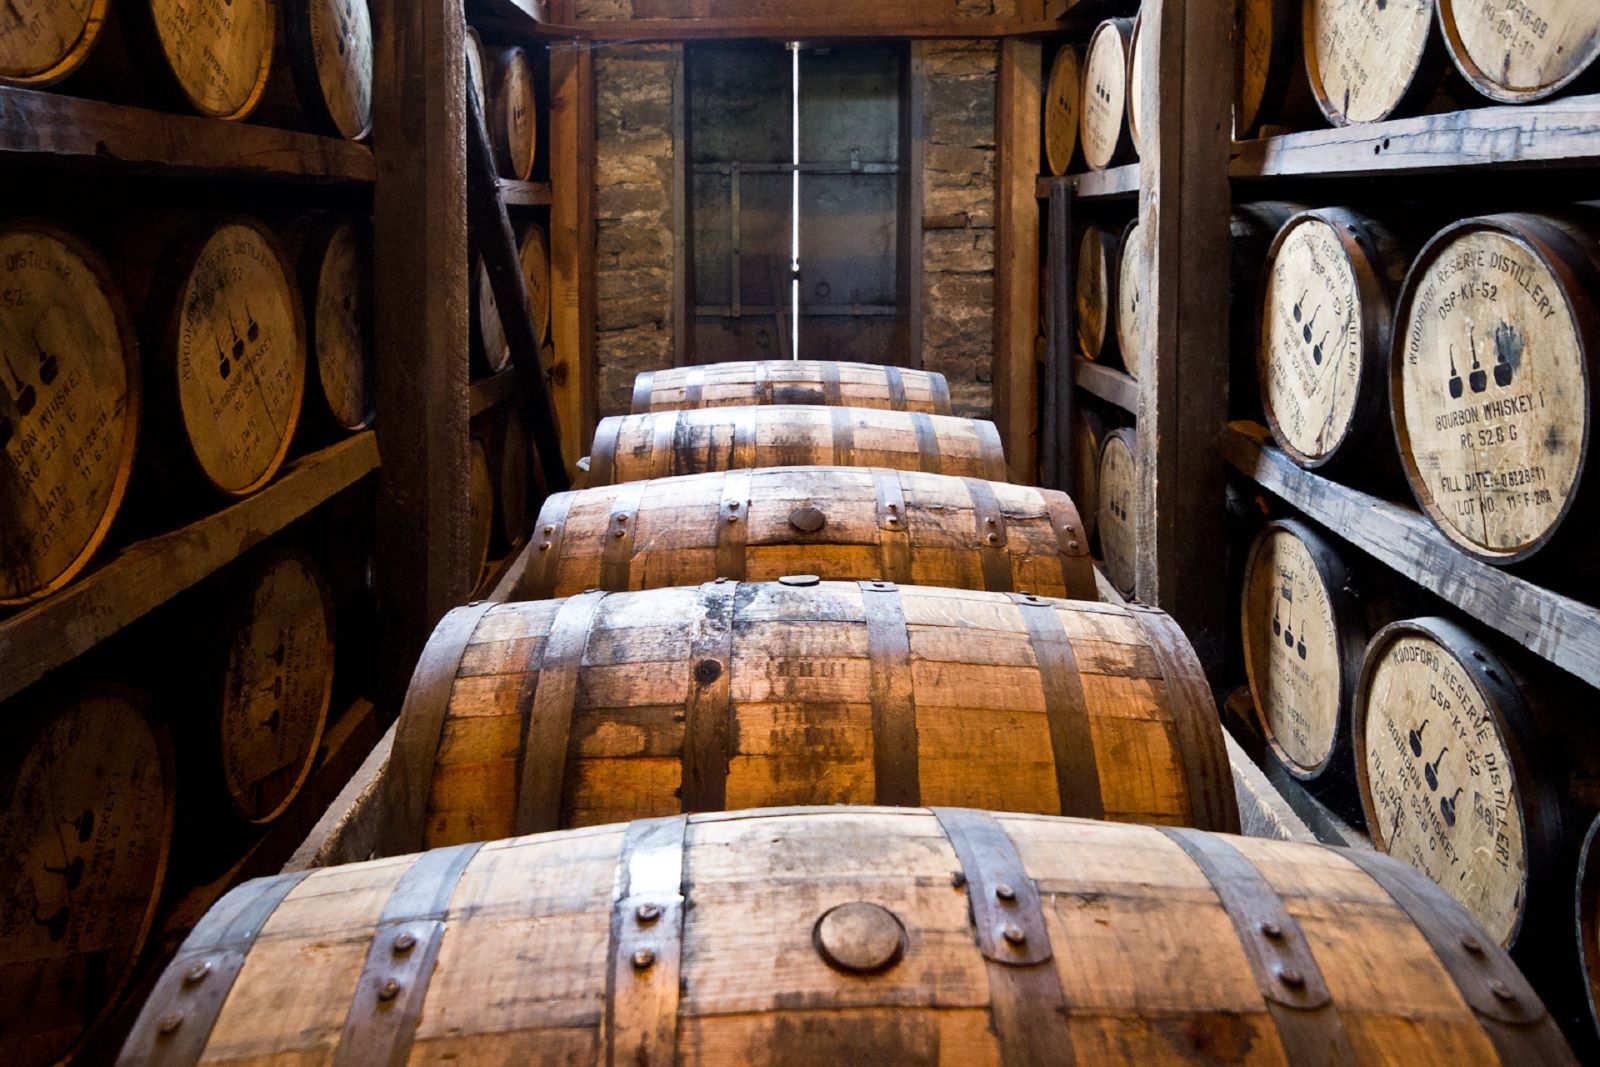 Pour contrôler la qualité de fabrication du whisky et lutter contre la contrefaçon, l'intelligence artificielle est mise à contribution. © Pixabay, Skeeze